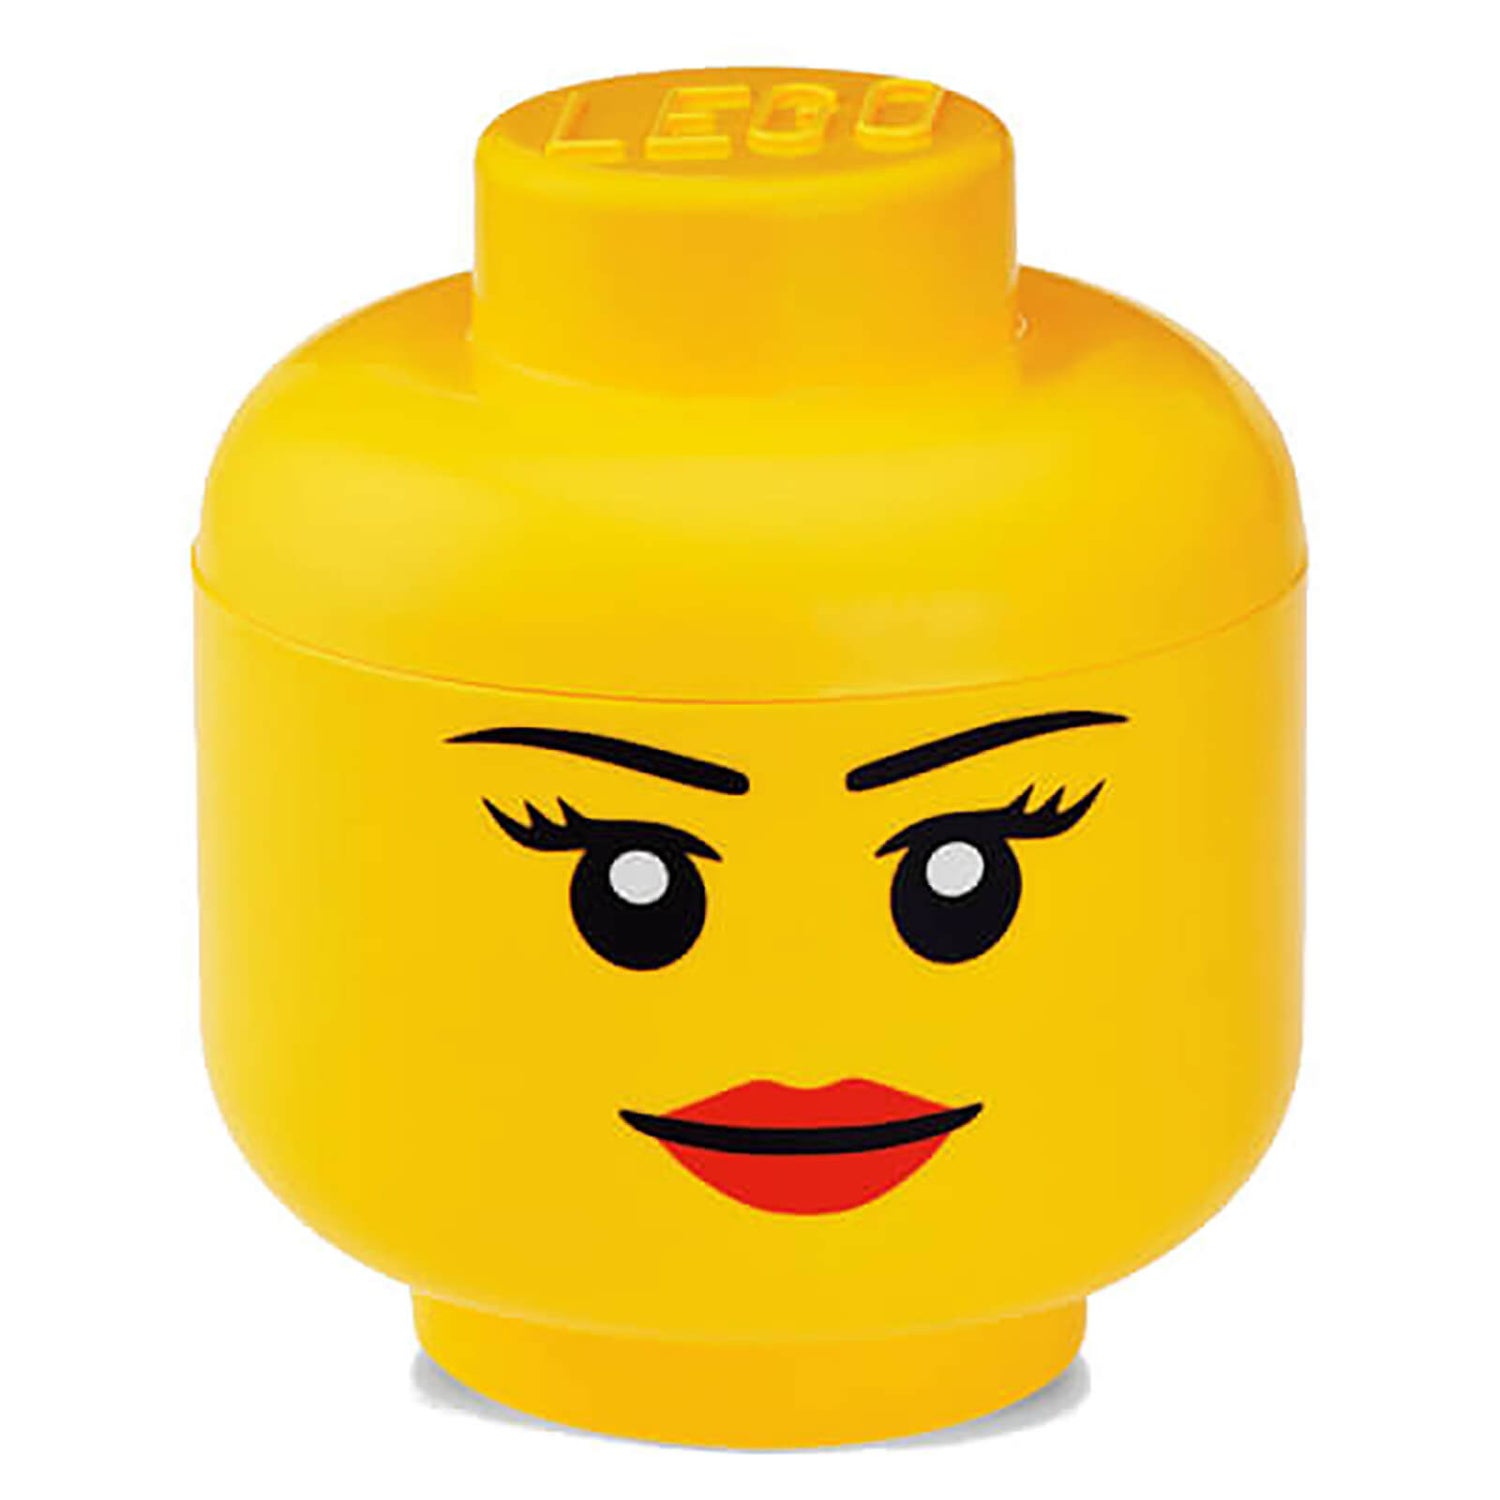 LEGO Iconic Girls Storage Head - Large